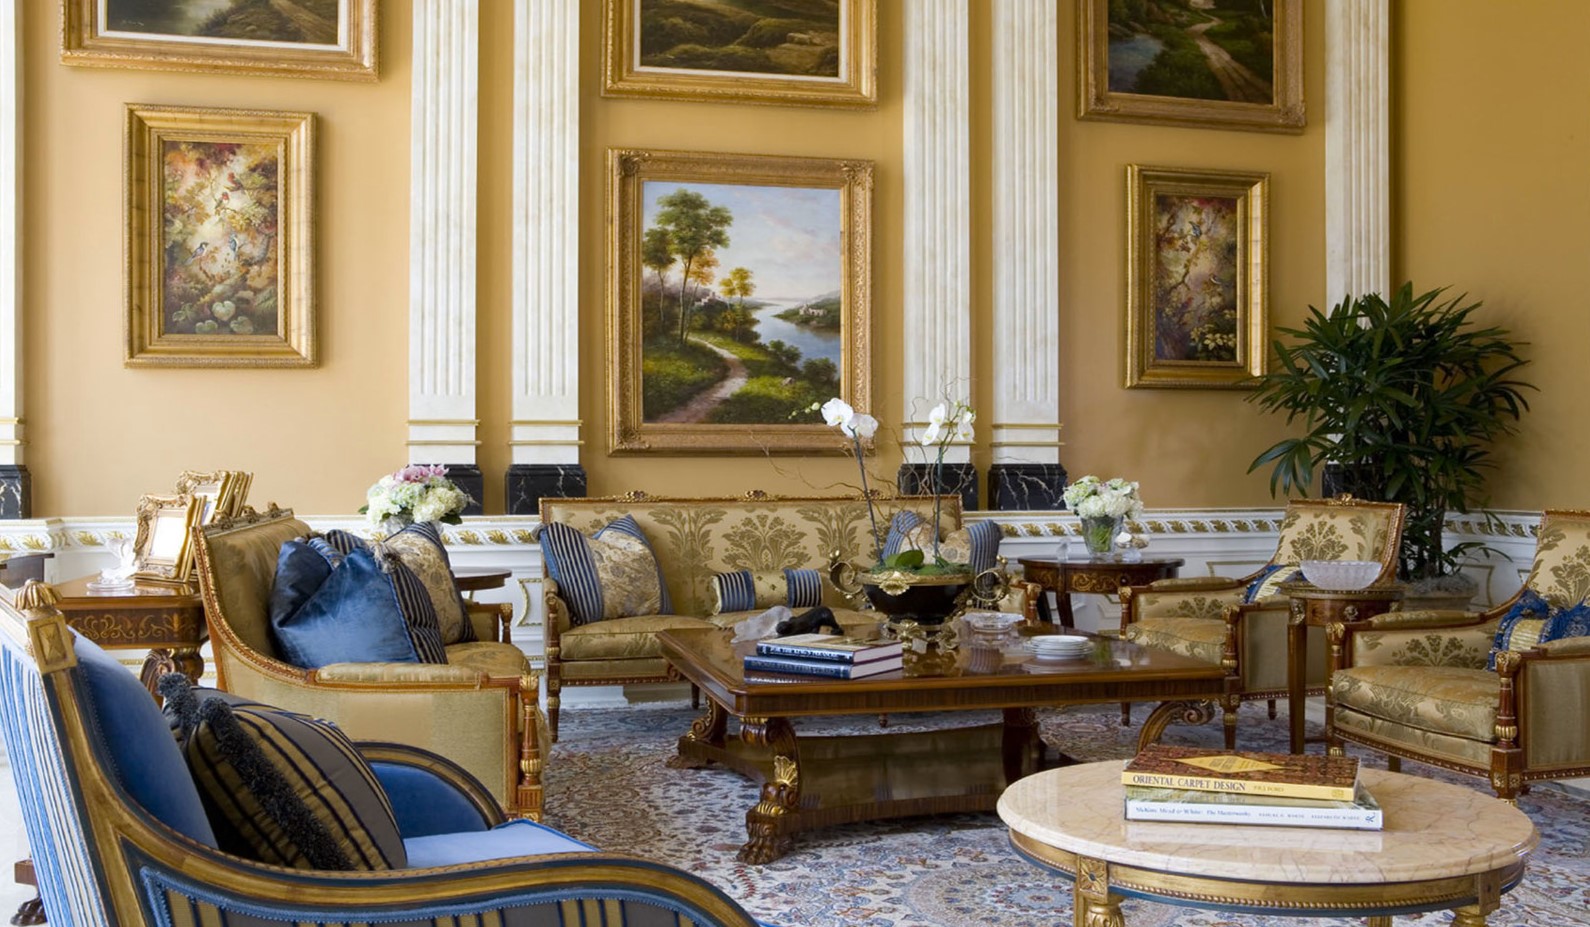 Мебель с резным декором и орнаментами прекрасно дополнит интерьер гостиной в стиле барокко